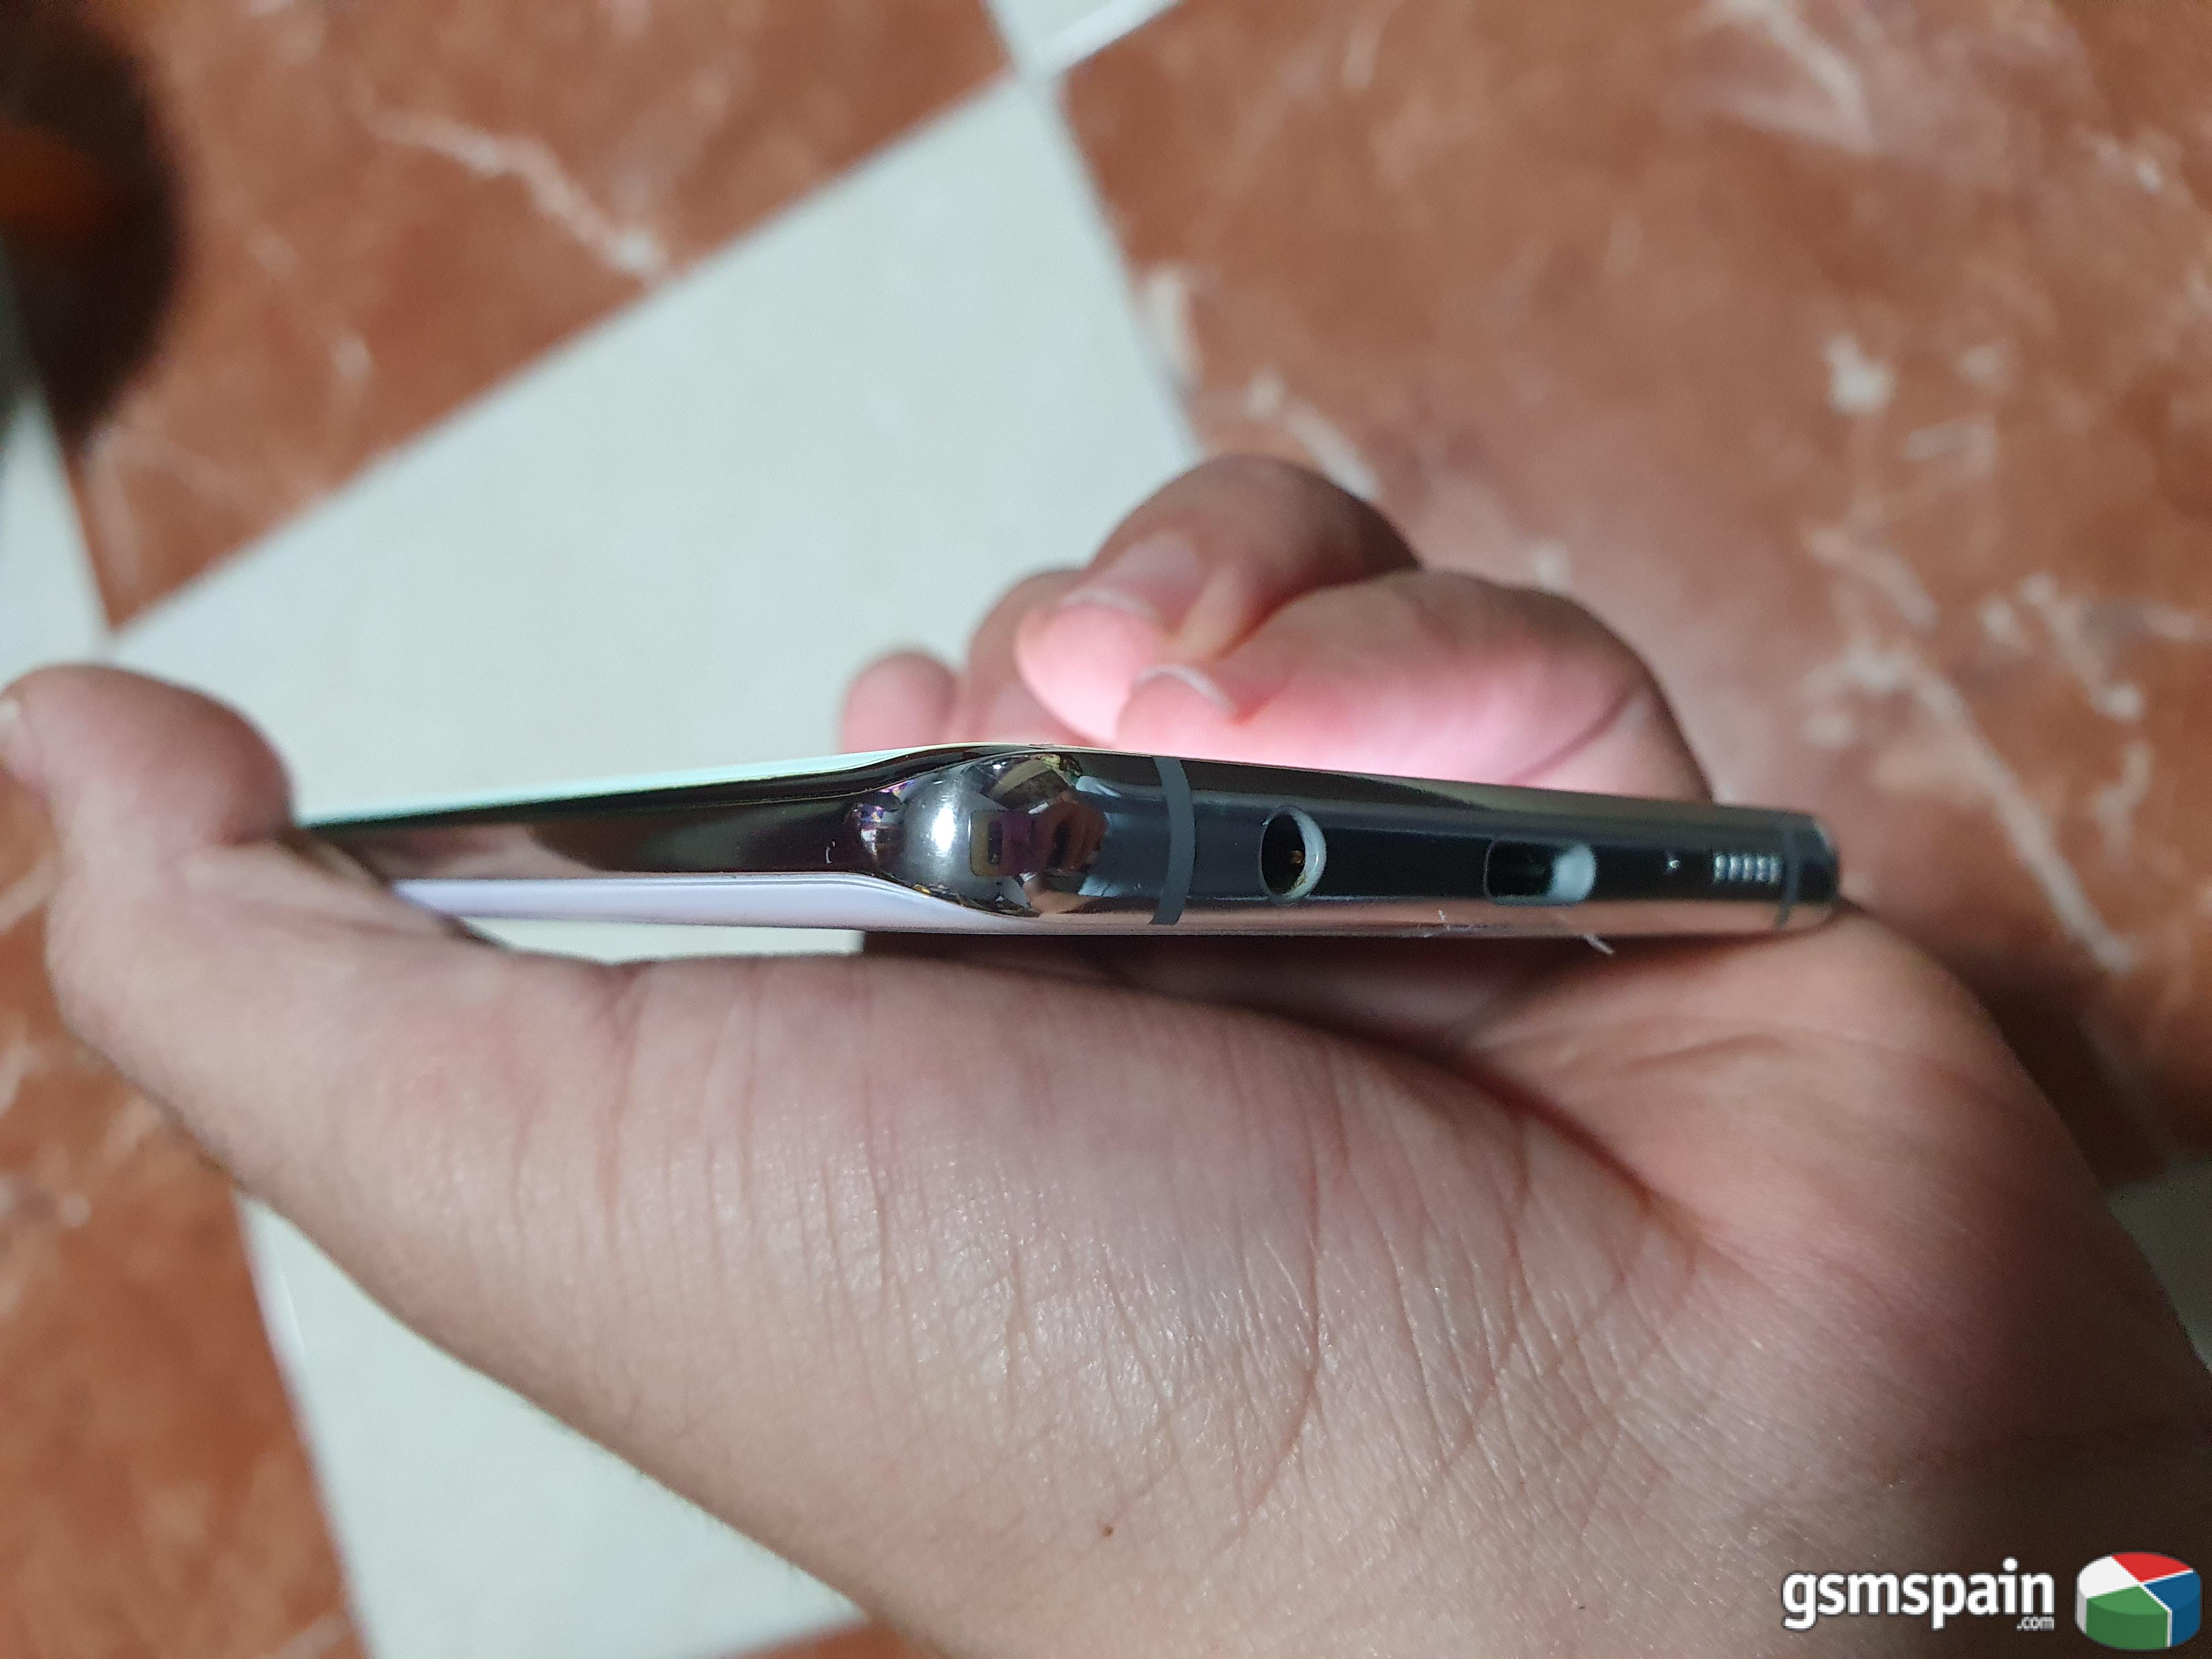 [VENDO] Samsung Galaxy S10+ prism white